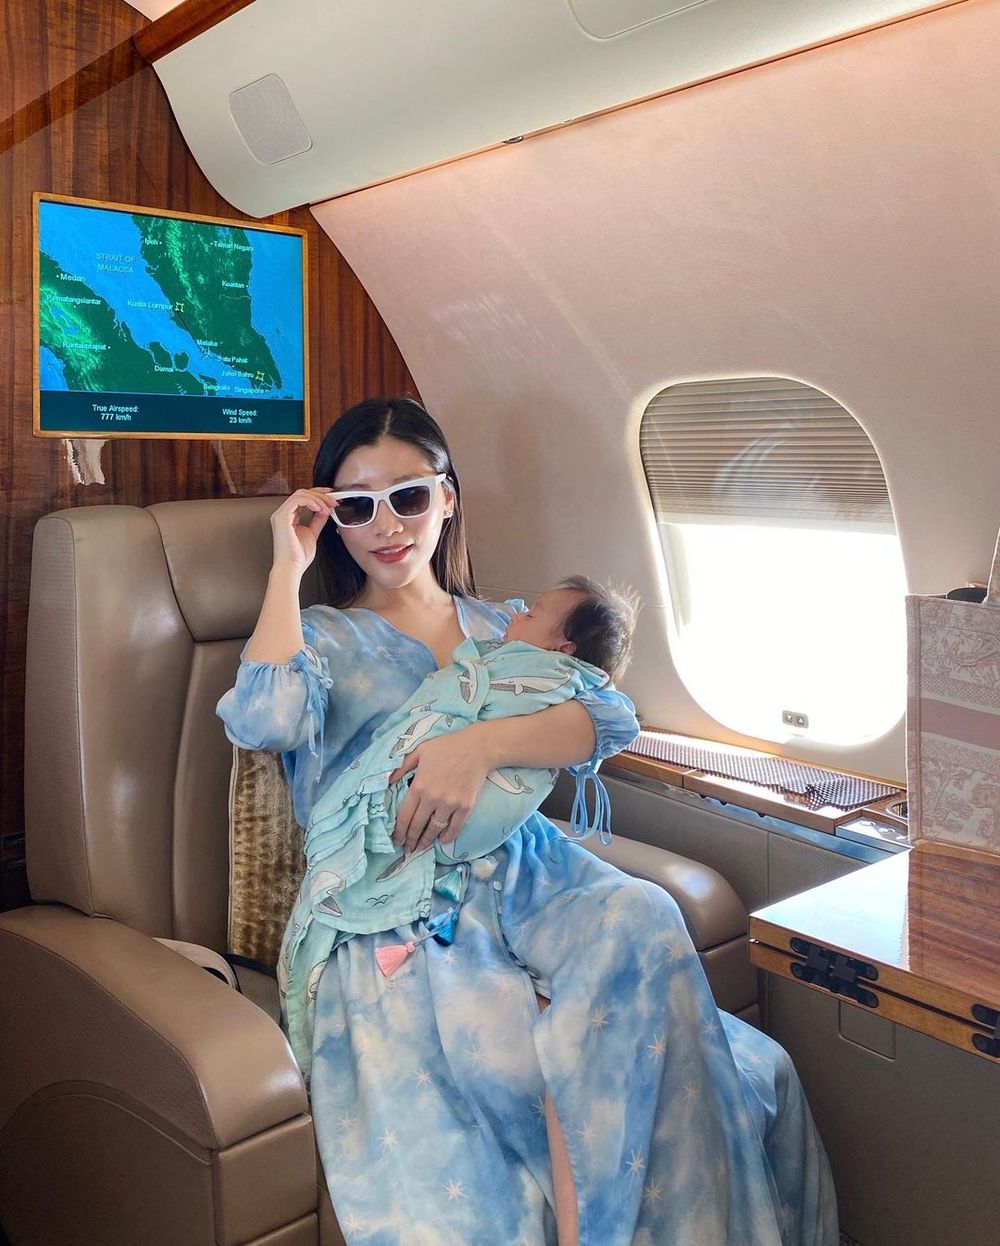  
Ái nữ của tỷ phú giàu nhất Malaysia giờ đang là bà mẹ một con được hâm mộ. (Ảnh: 178 ins)